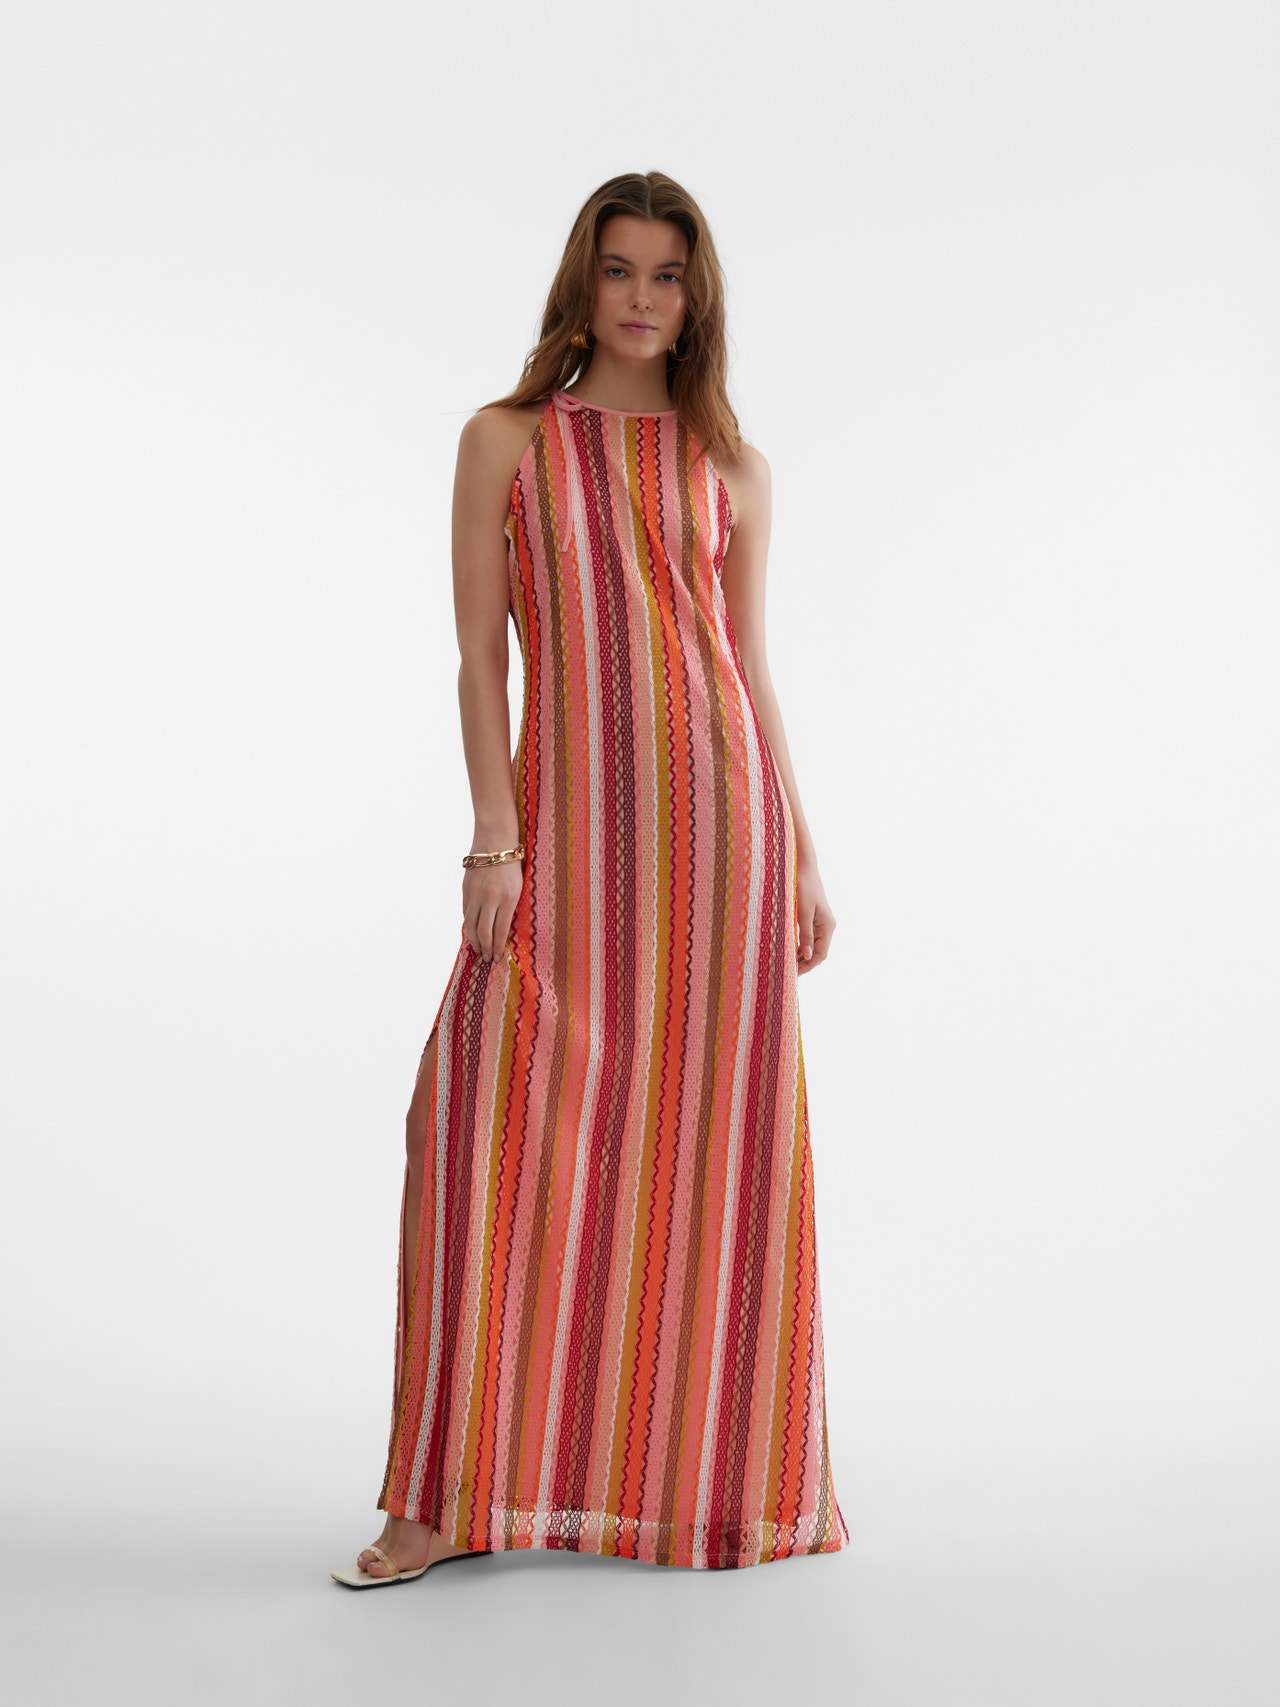 Vero Moda SOMETHINGNEW Styled by; Larissa Wehr Long dress -Burnt Ochre - 10307847